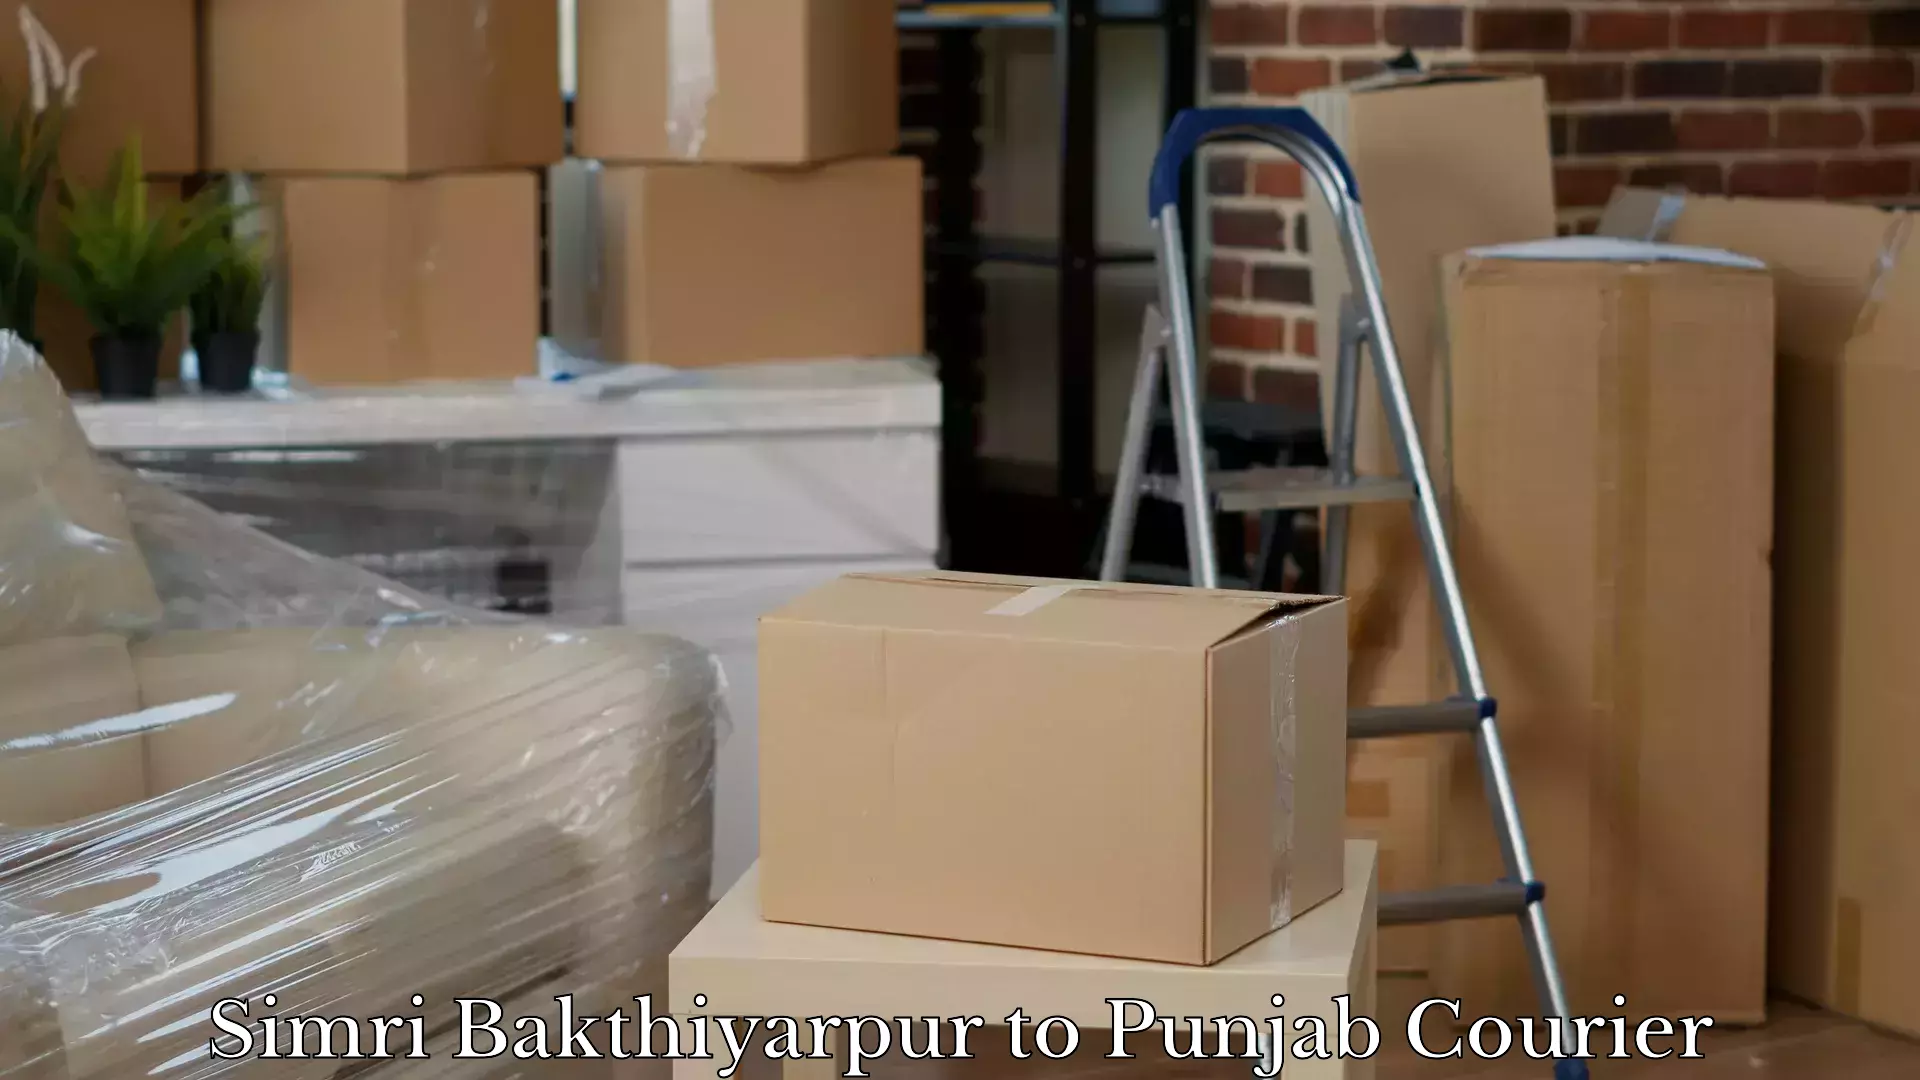 Reliable luggage courier Simri Bakthiyarpur to Punjab